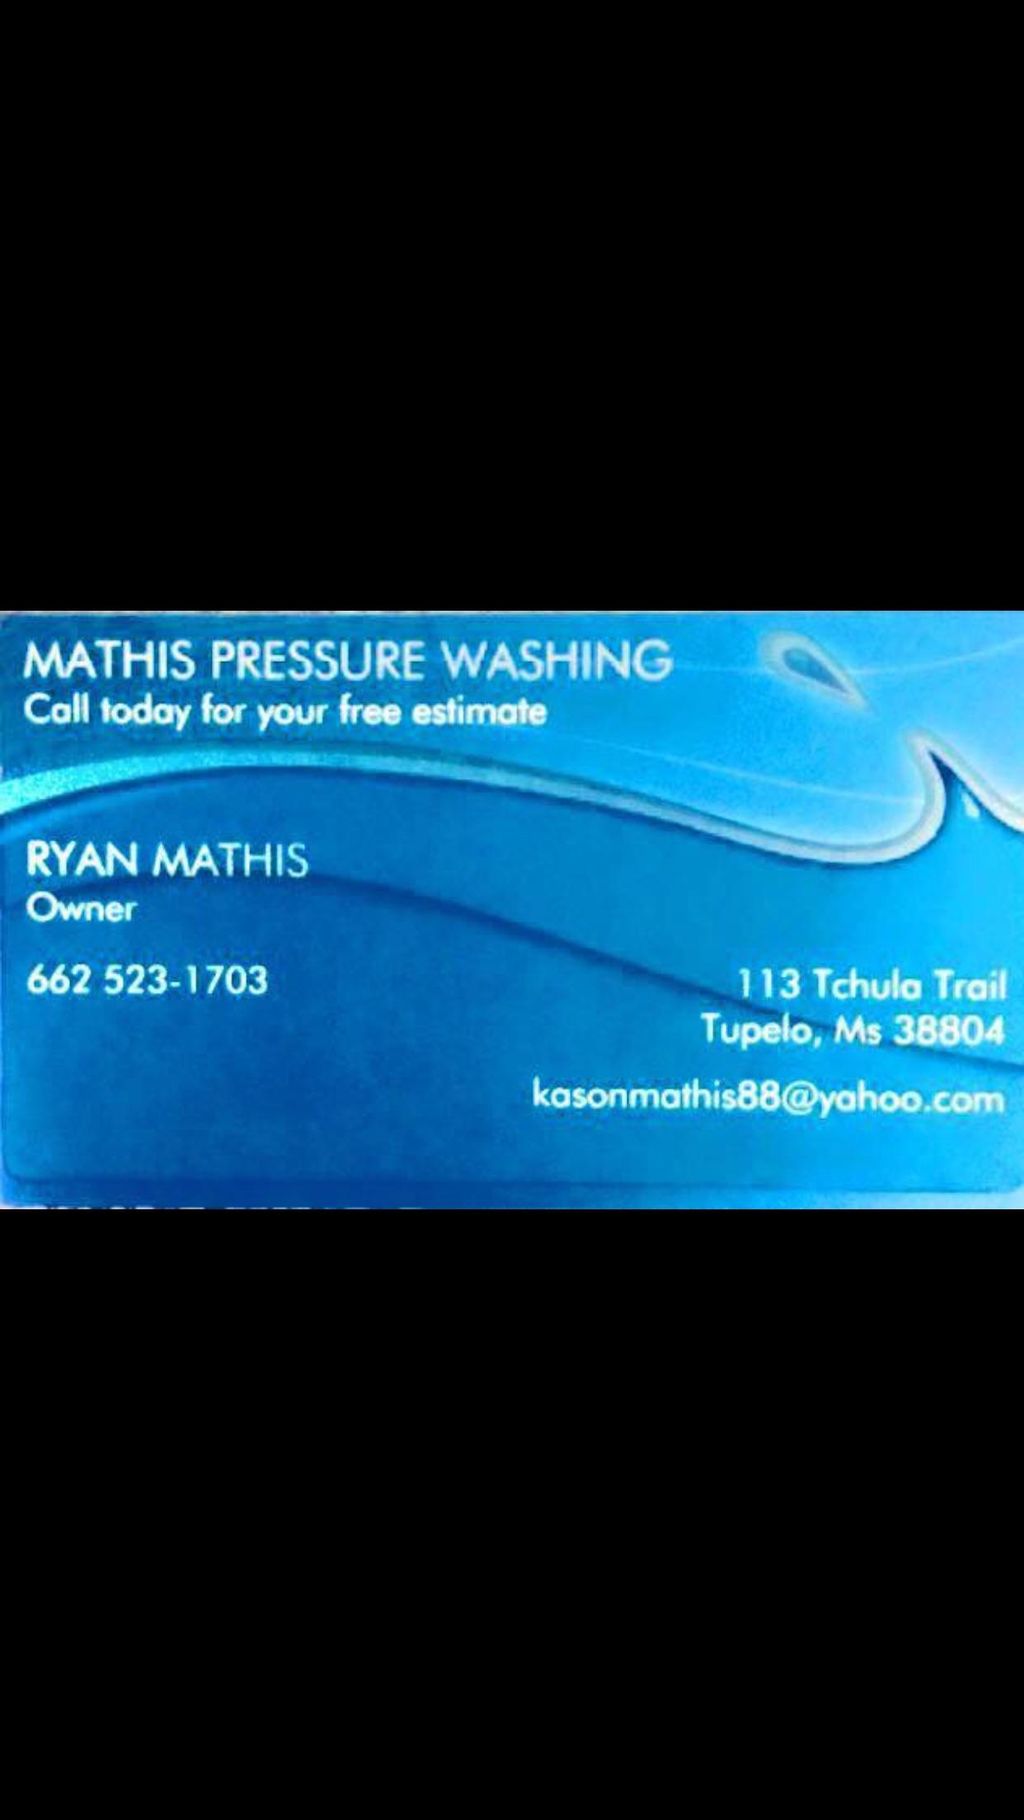 Mathis pressure washing